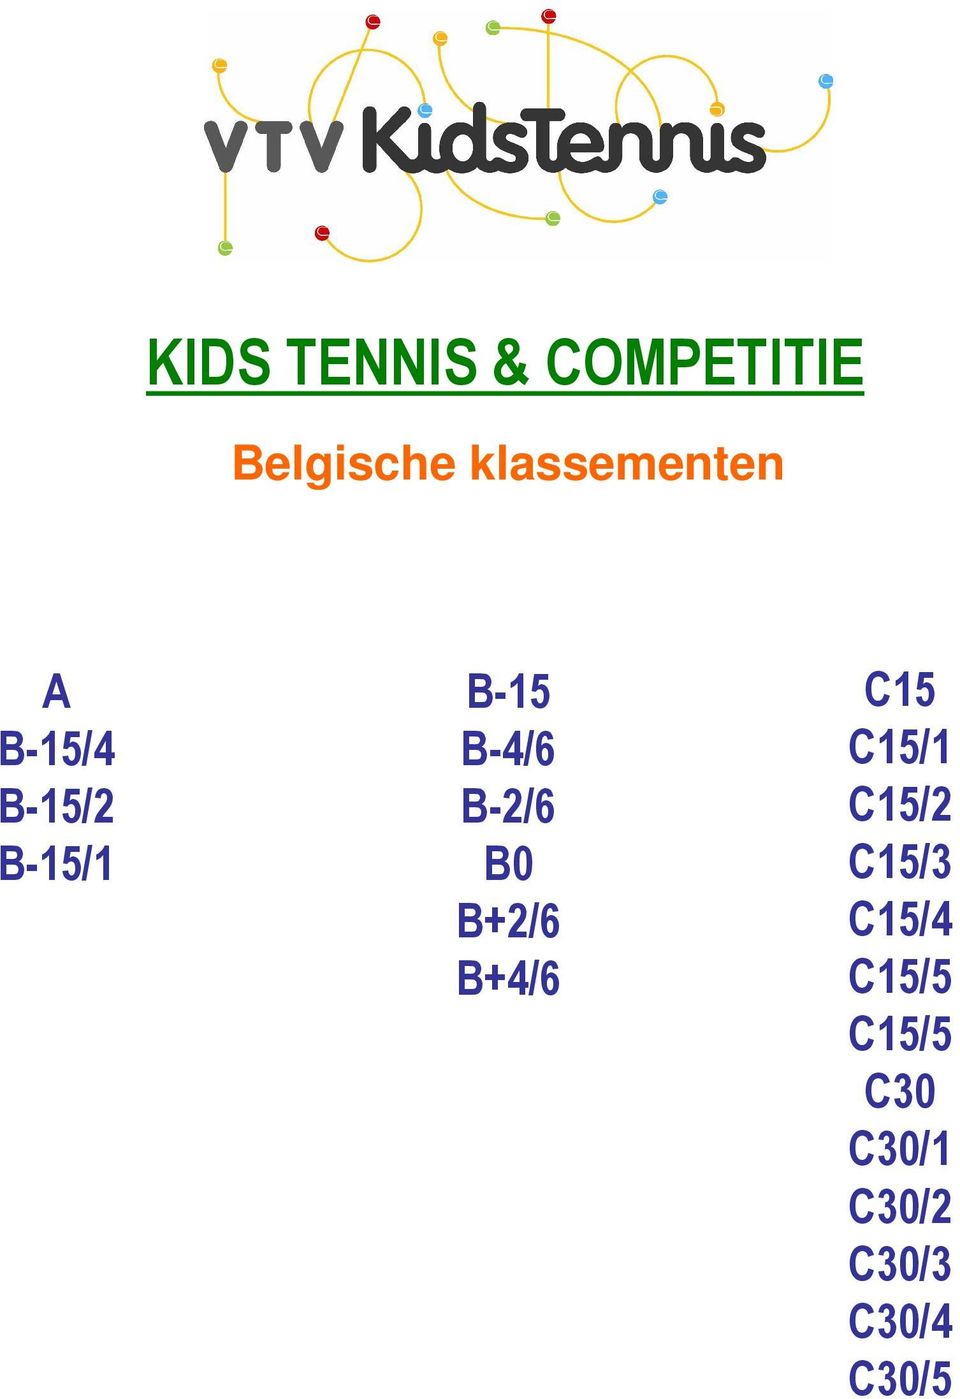 DOEL INFO CLINIC OUDERS INFORMEREN AANPAK KIDS TENNIS COMPETITIE - PDF  Gratis download